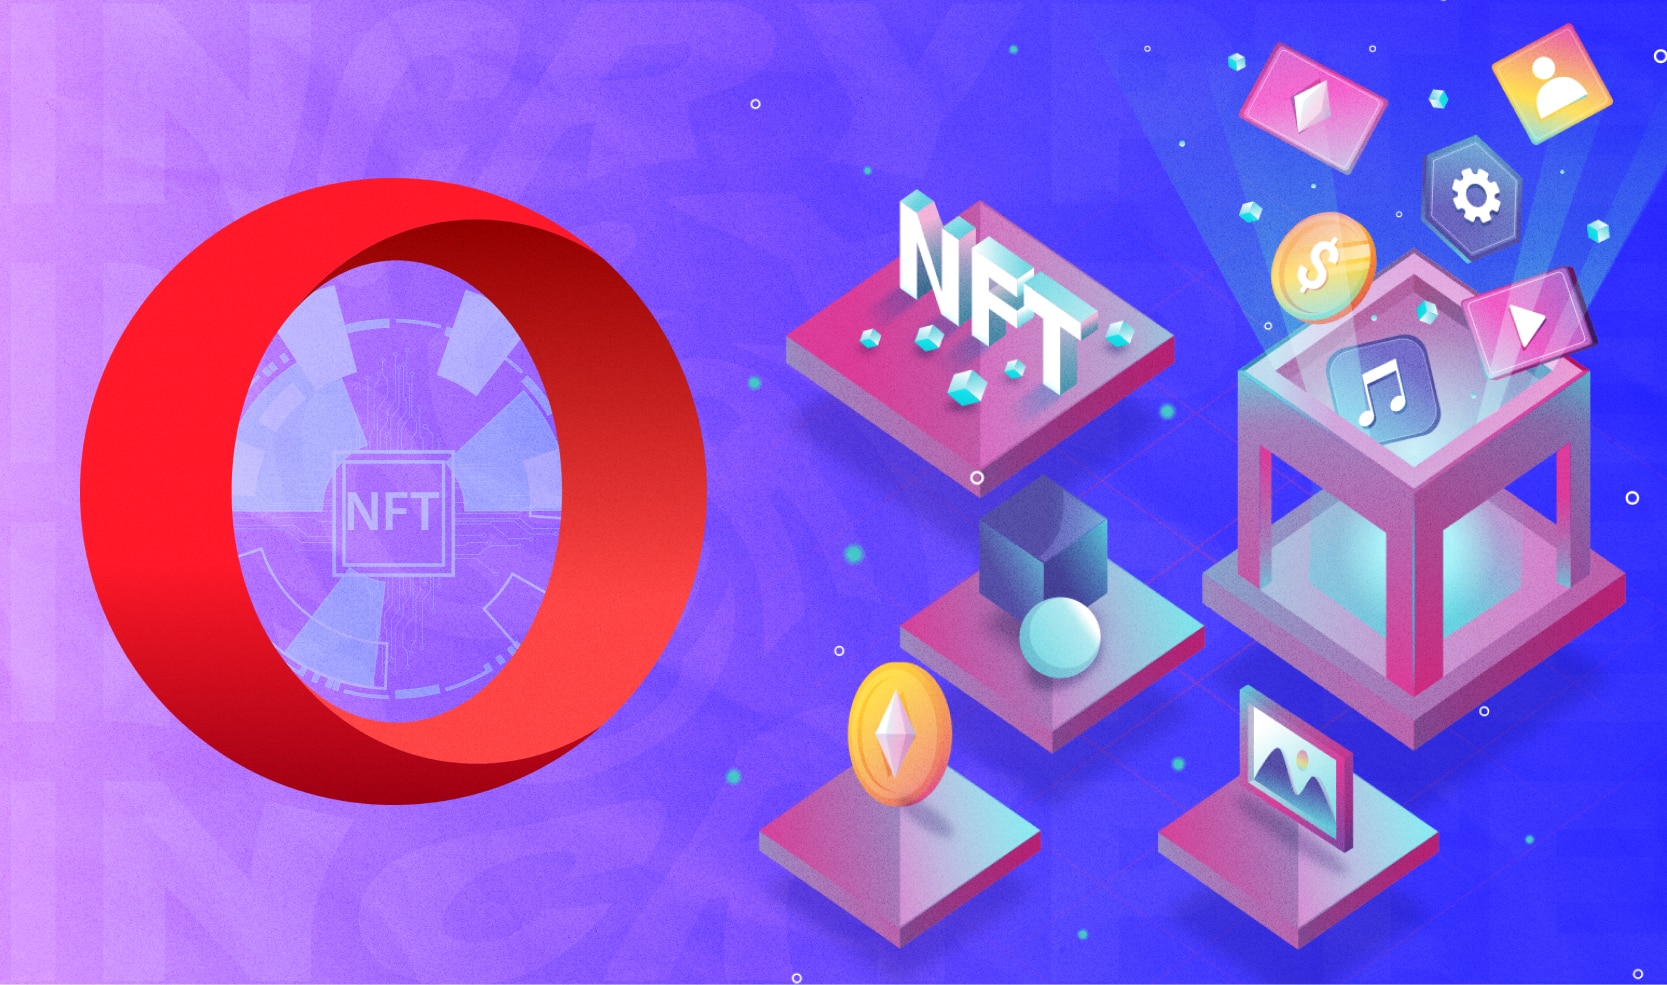 Opera добавила опцию для бесплатного создания NFT. Заглавный коллаж новости.